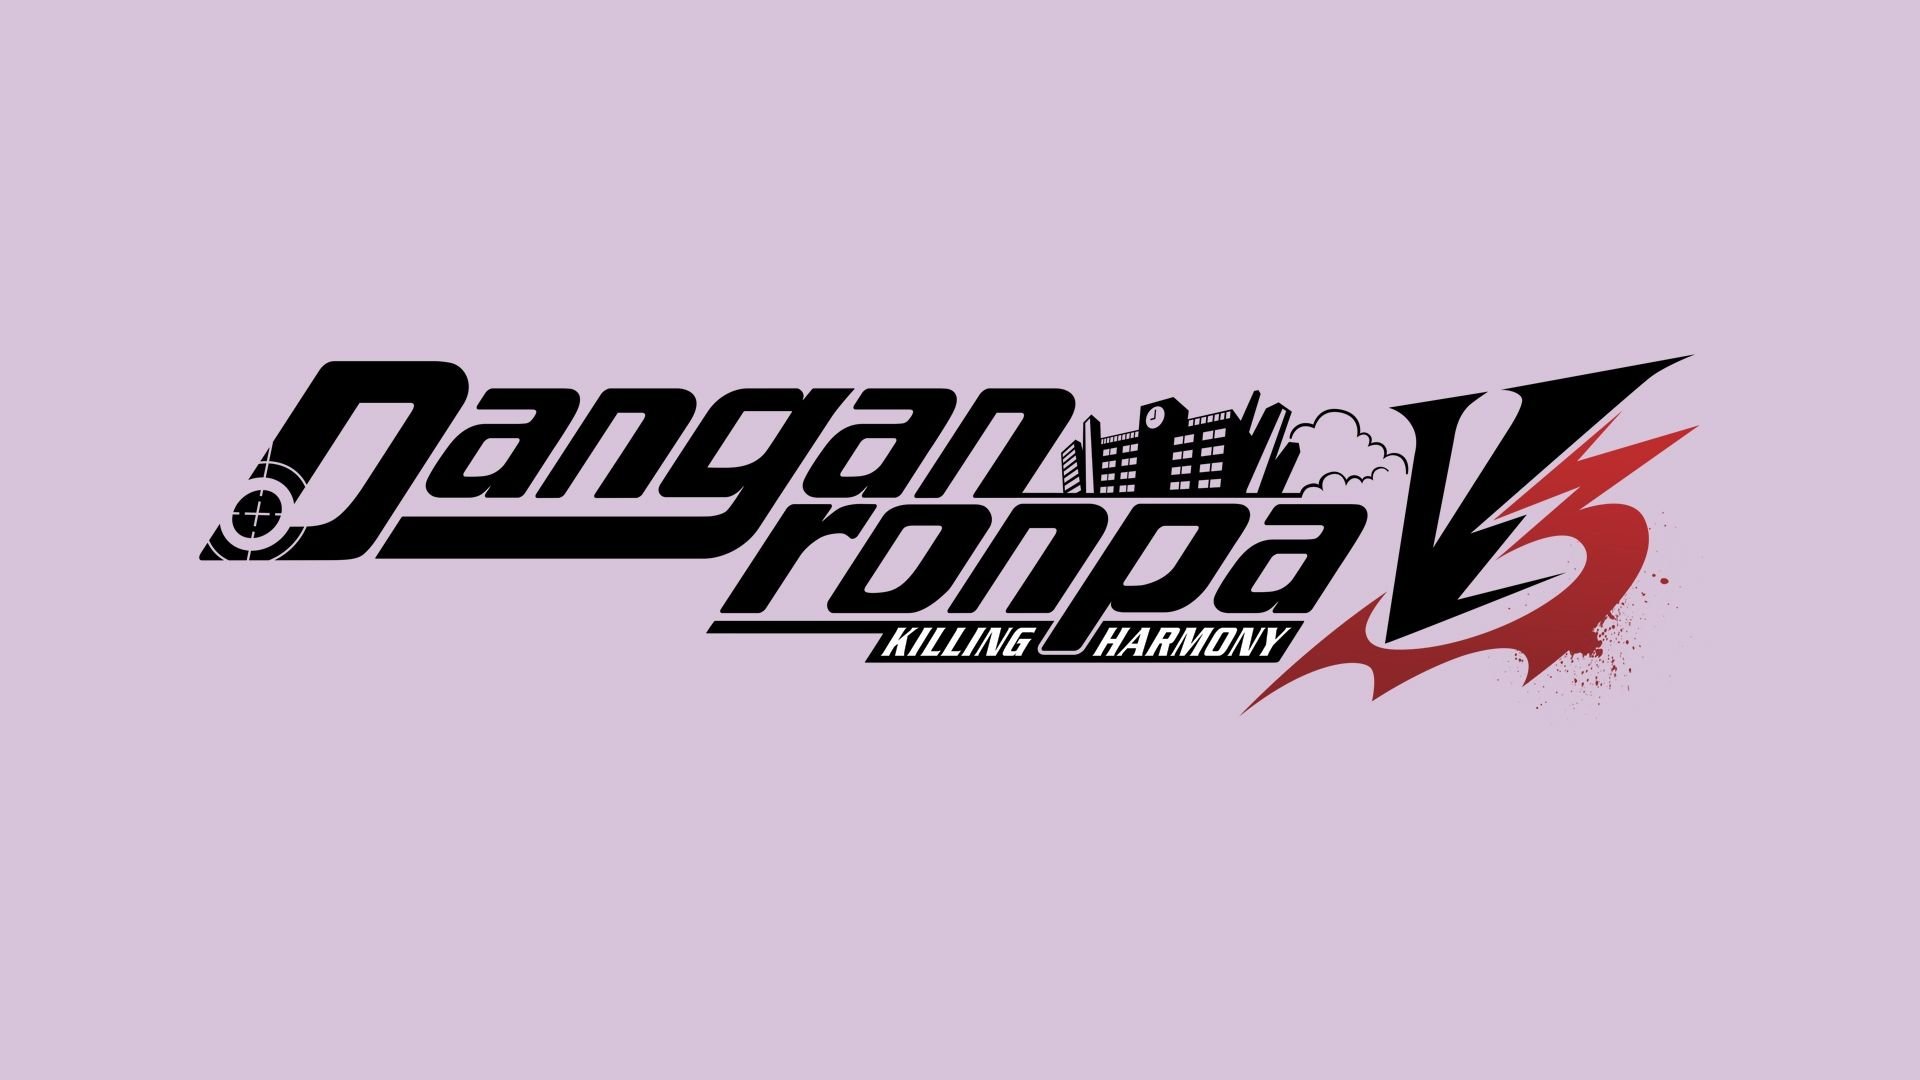 Danganronpa V3 Logo Wallpaper 67399 1920x1080px